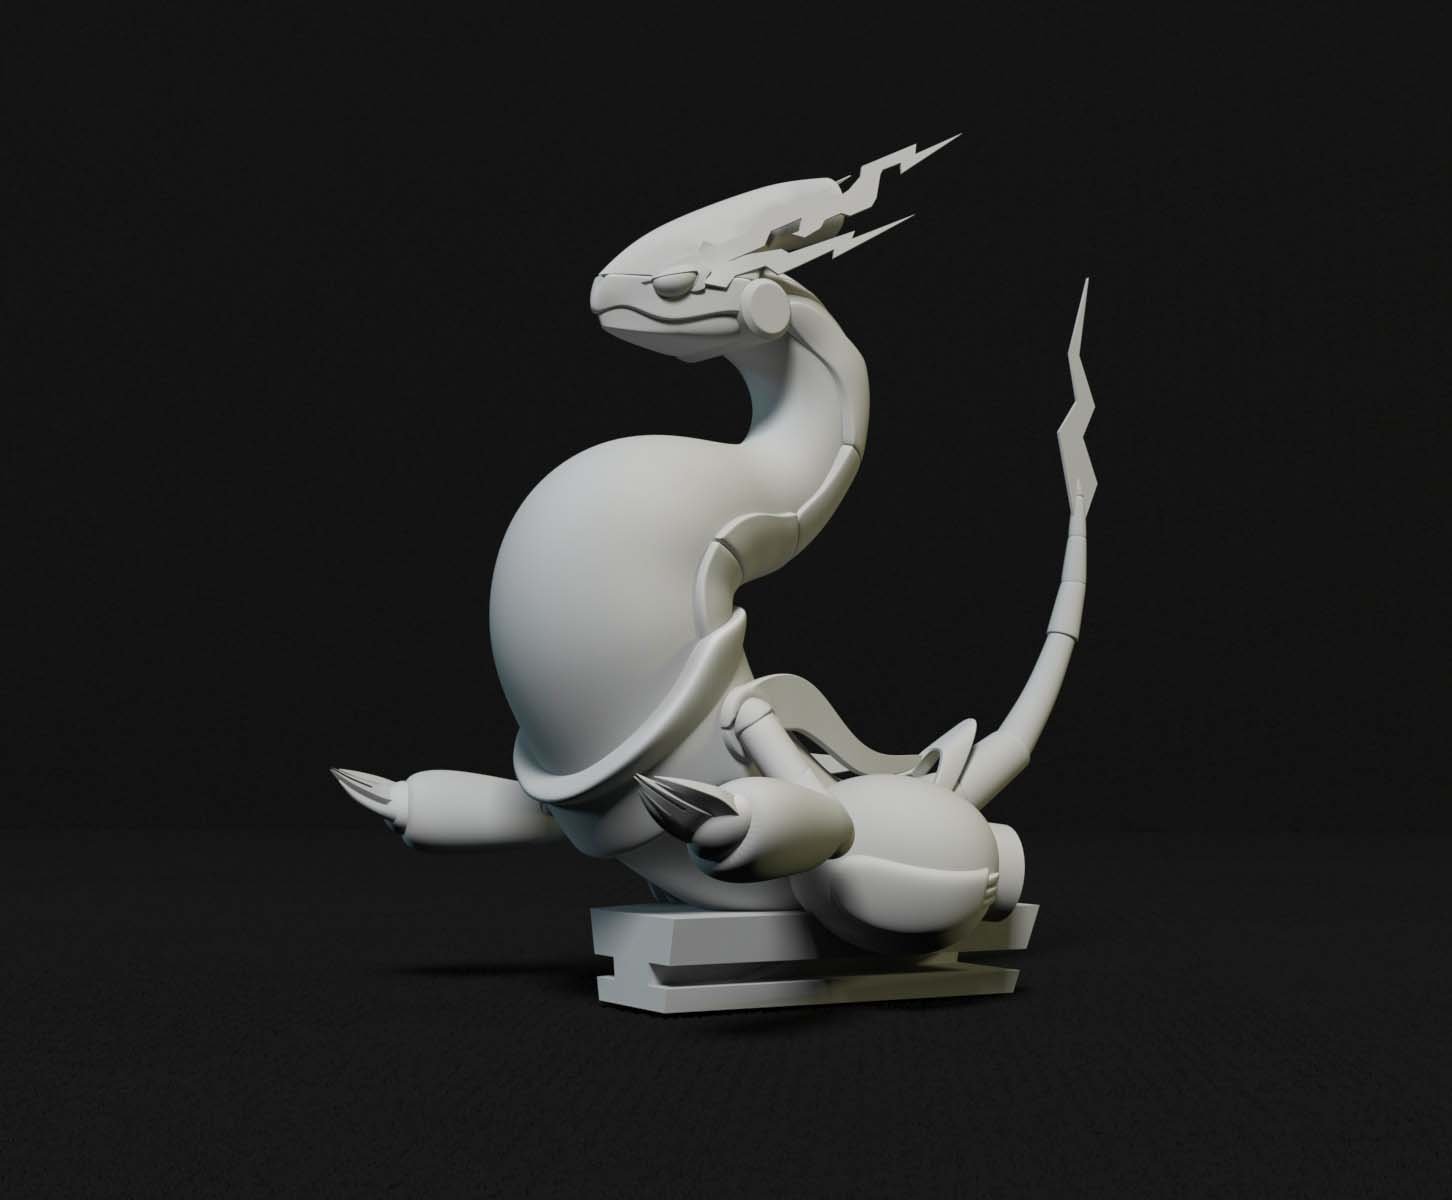 LUGIA LEGENDARY POKEMON | 3D Print Model